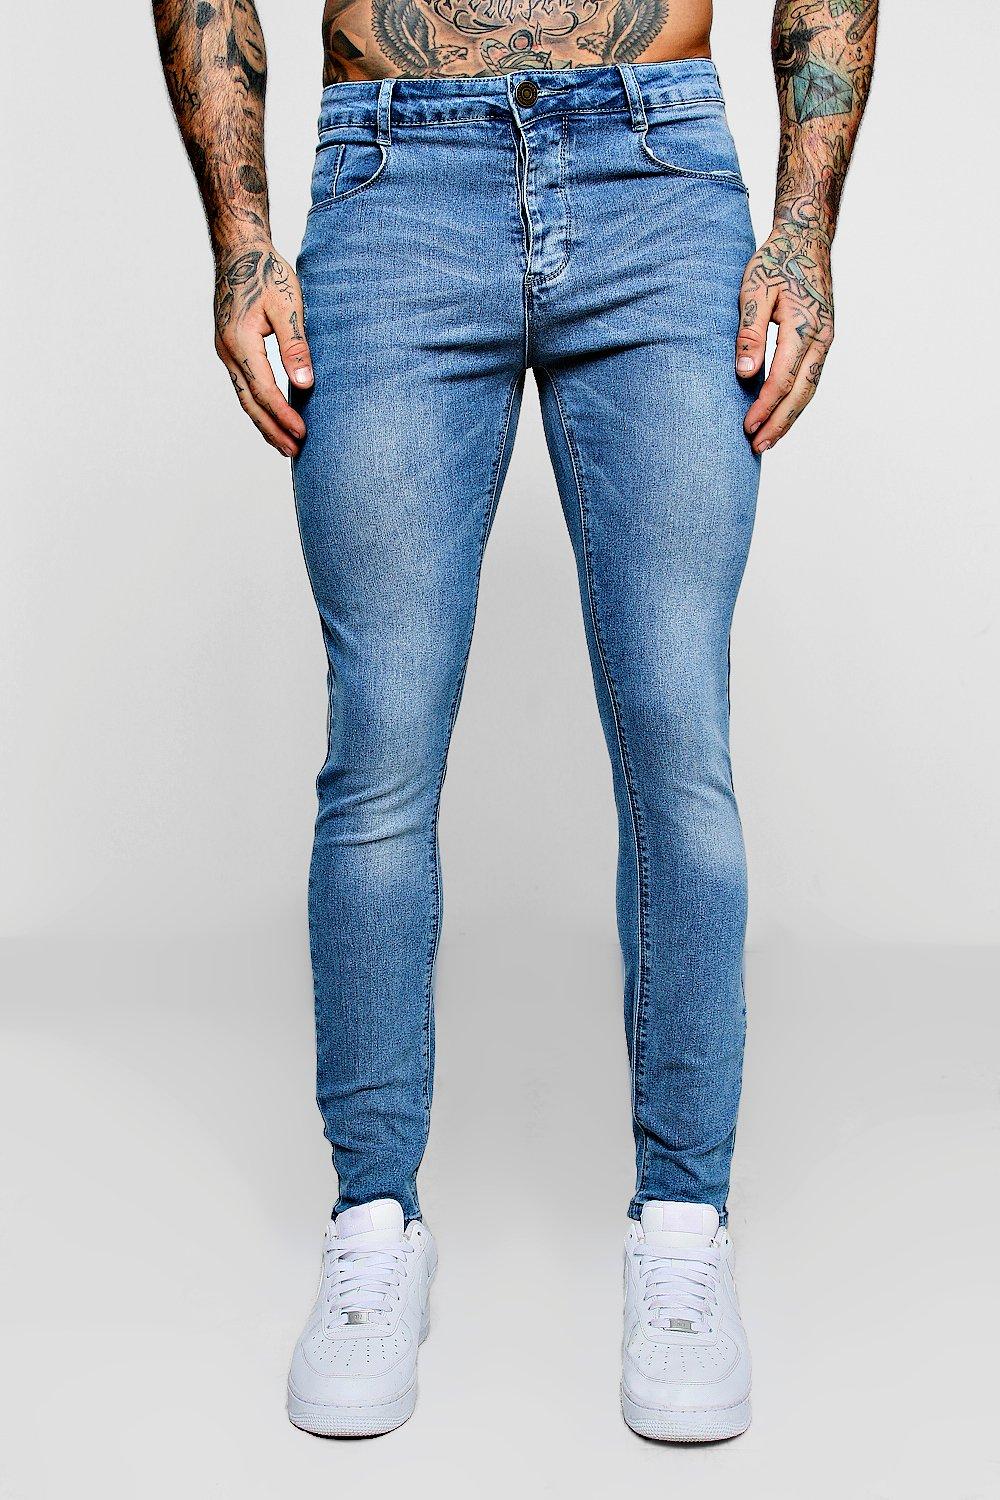 pale blue denim jeans